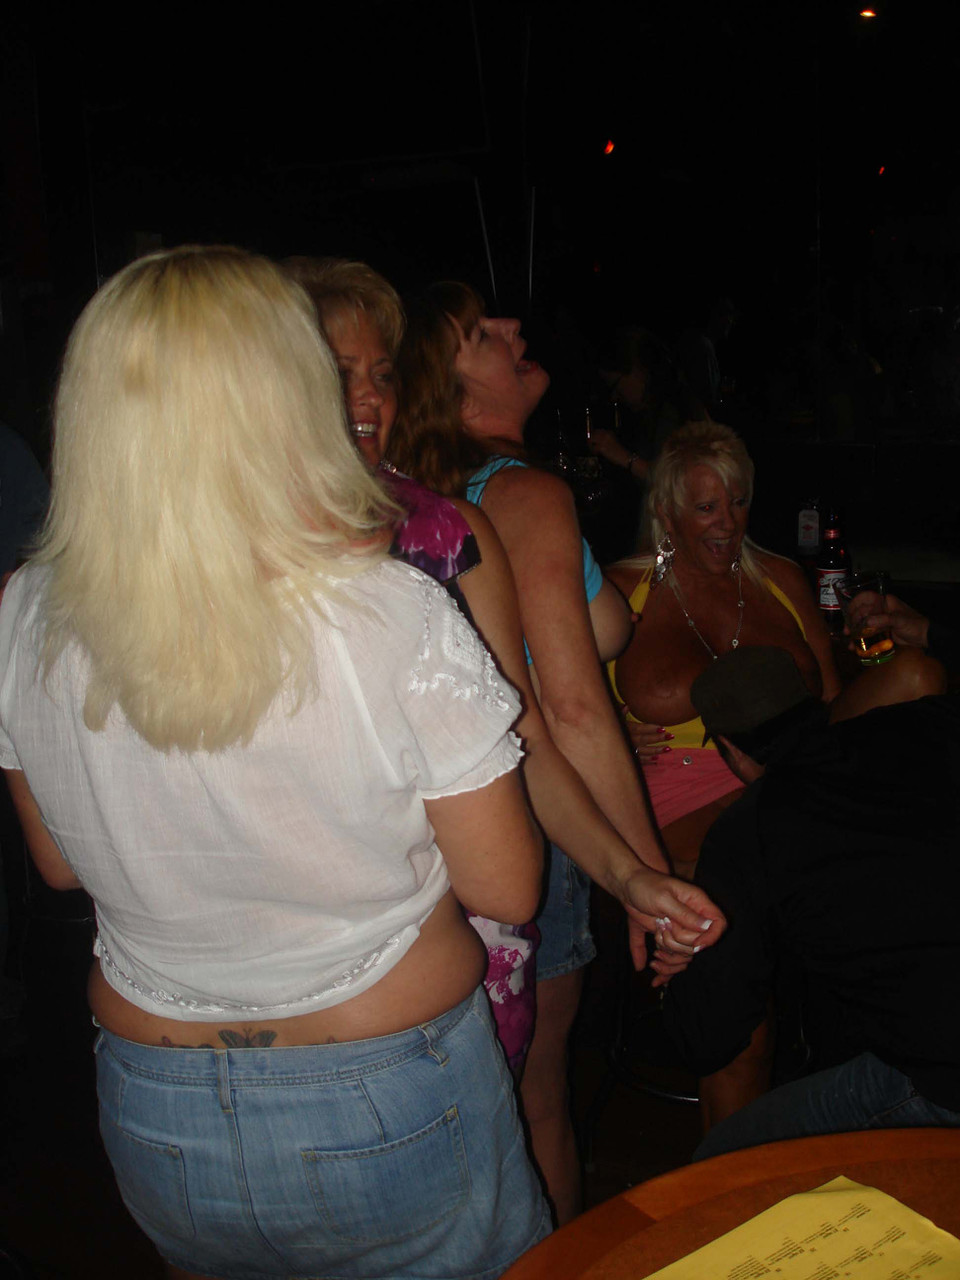 Real Tampa Swingers Dee Delmar, Double Dee, Mandi Mcgraw, Tracy Lick foto porno #424445794 | Real Tampa Swingers Pics, Dee Delmar, Double Dee, Mandi Mcgraw, Tracy Lick, Party, porno móvil